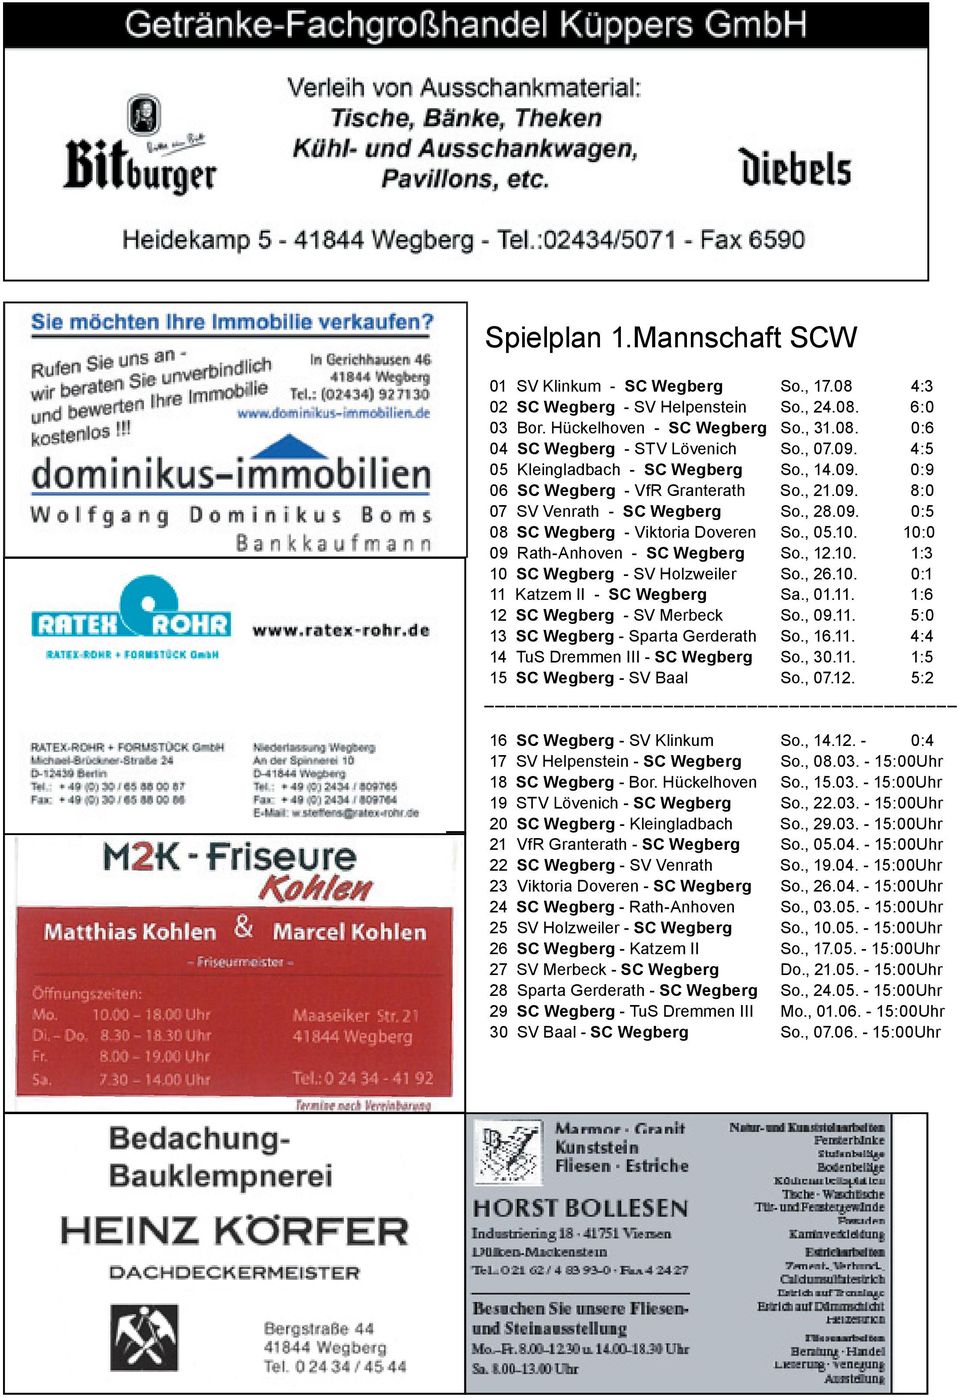 10:0 09 Rath-Anhoven - SC Wegberg So., 12.10. 1:3 10 SC Wegberg - SV Holzweiler So., 26.10. 0:1 11 Katzem II - SC Wegberg Sa., 01.11. 1:6 12 SC Wegberg - SV Merbeck So., 09.11. 5:0 13 SC Wegberg - Sparta Gerderath So.